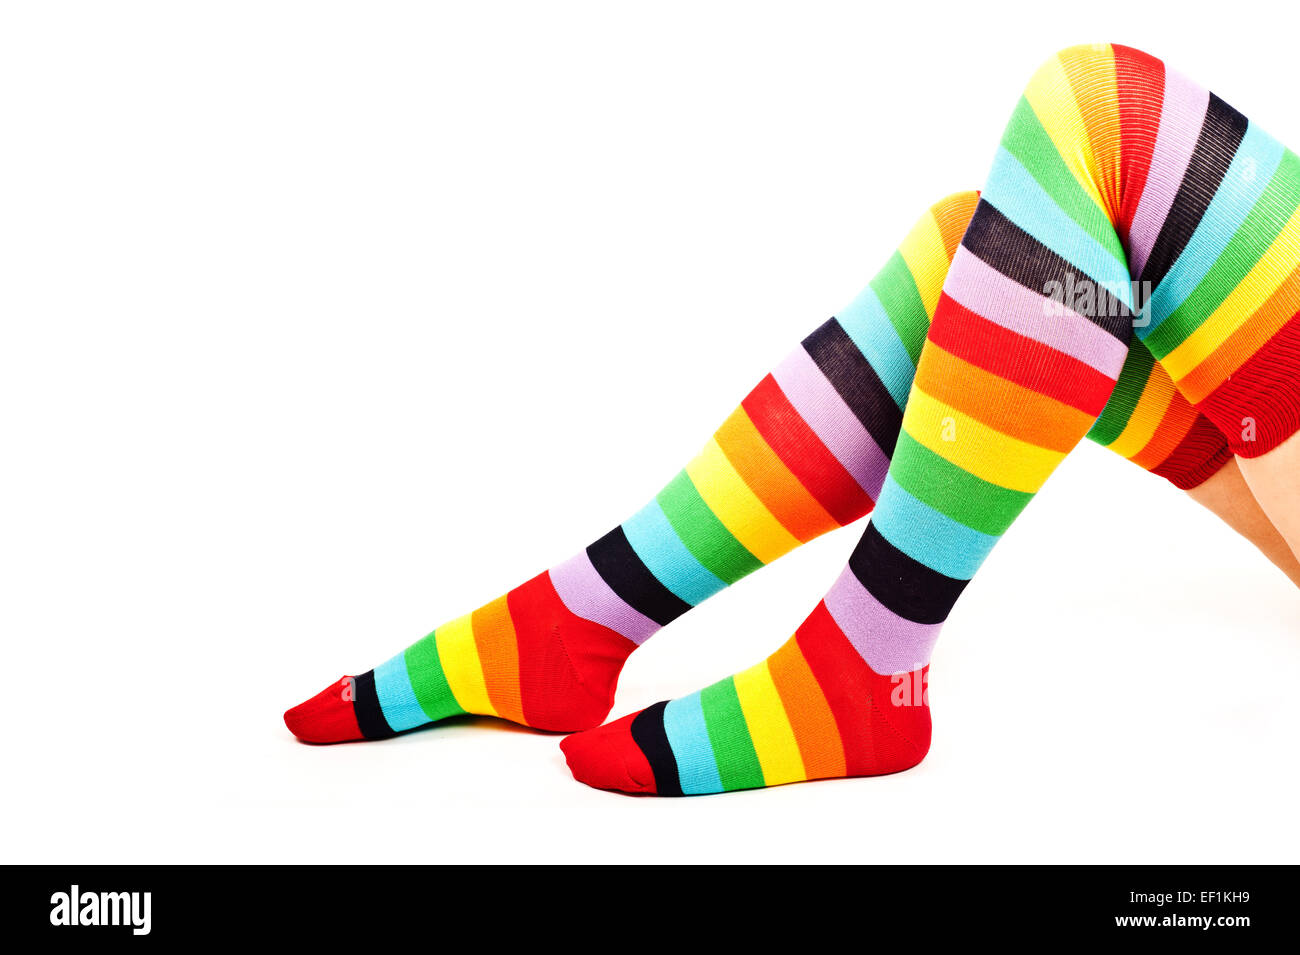 Frau Beine tragen bunte Regenbogen Kniestrümpfe Socken, isoliert Stockfoto